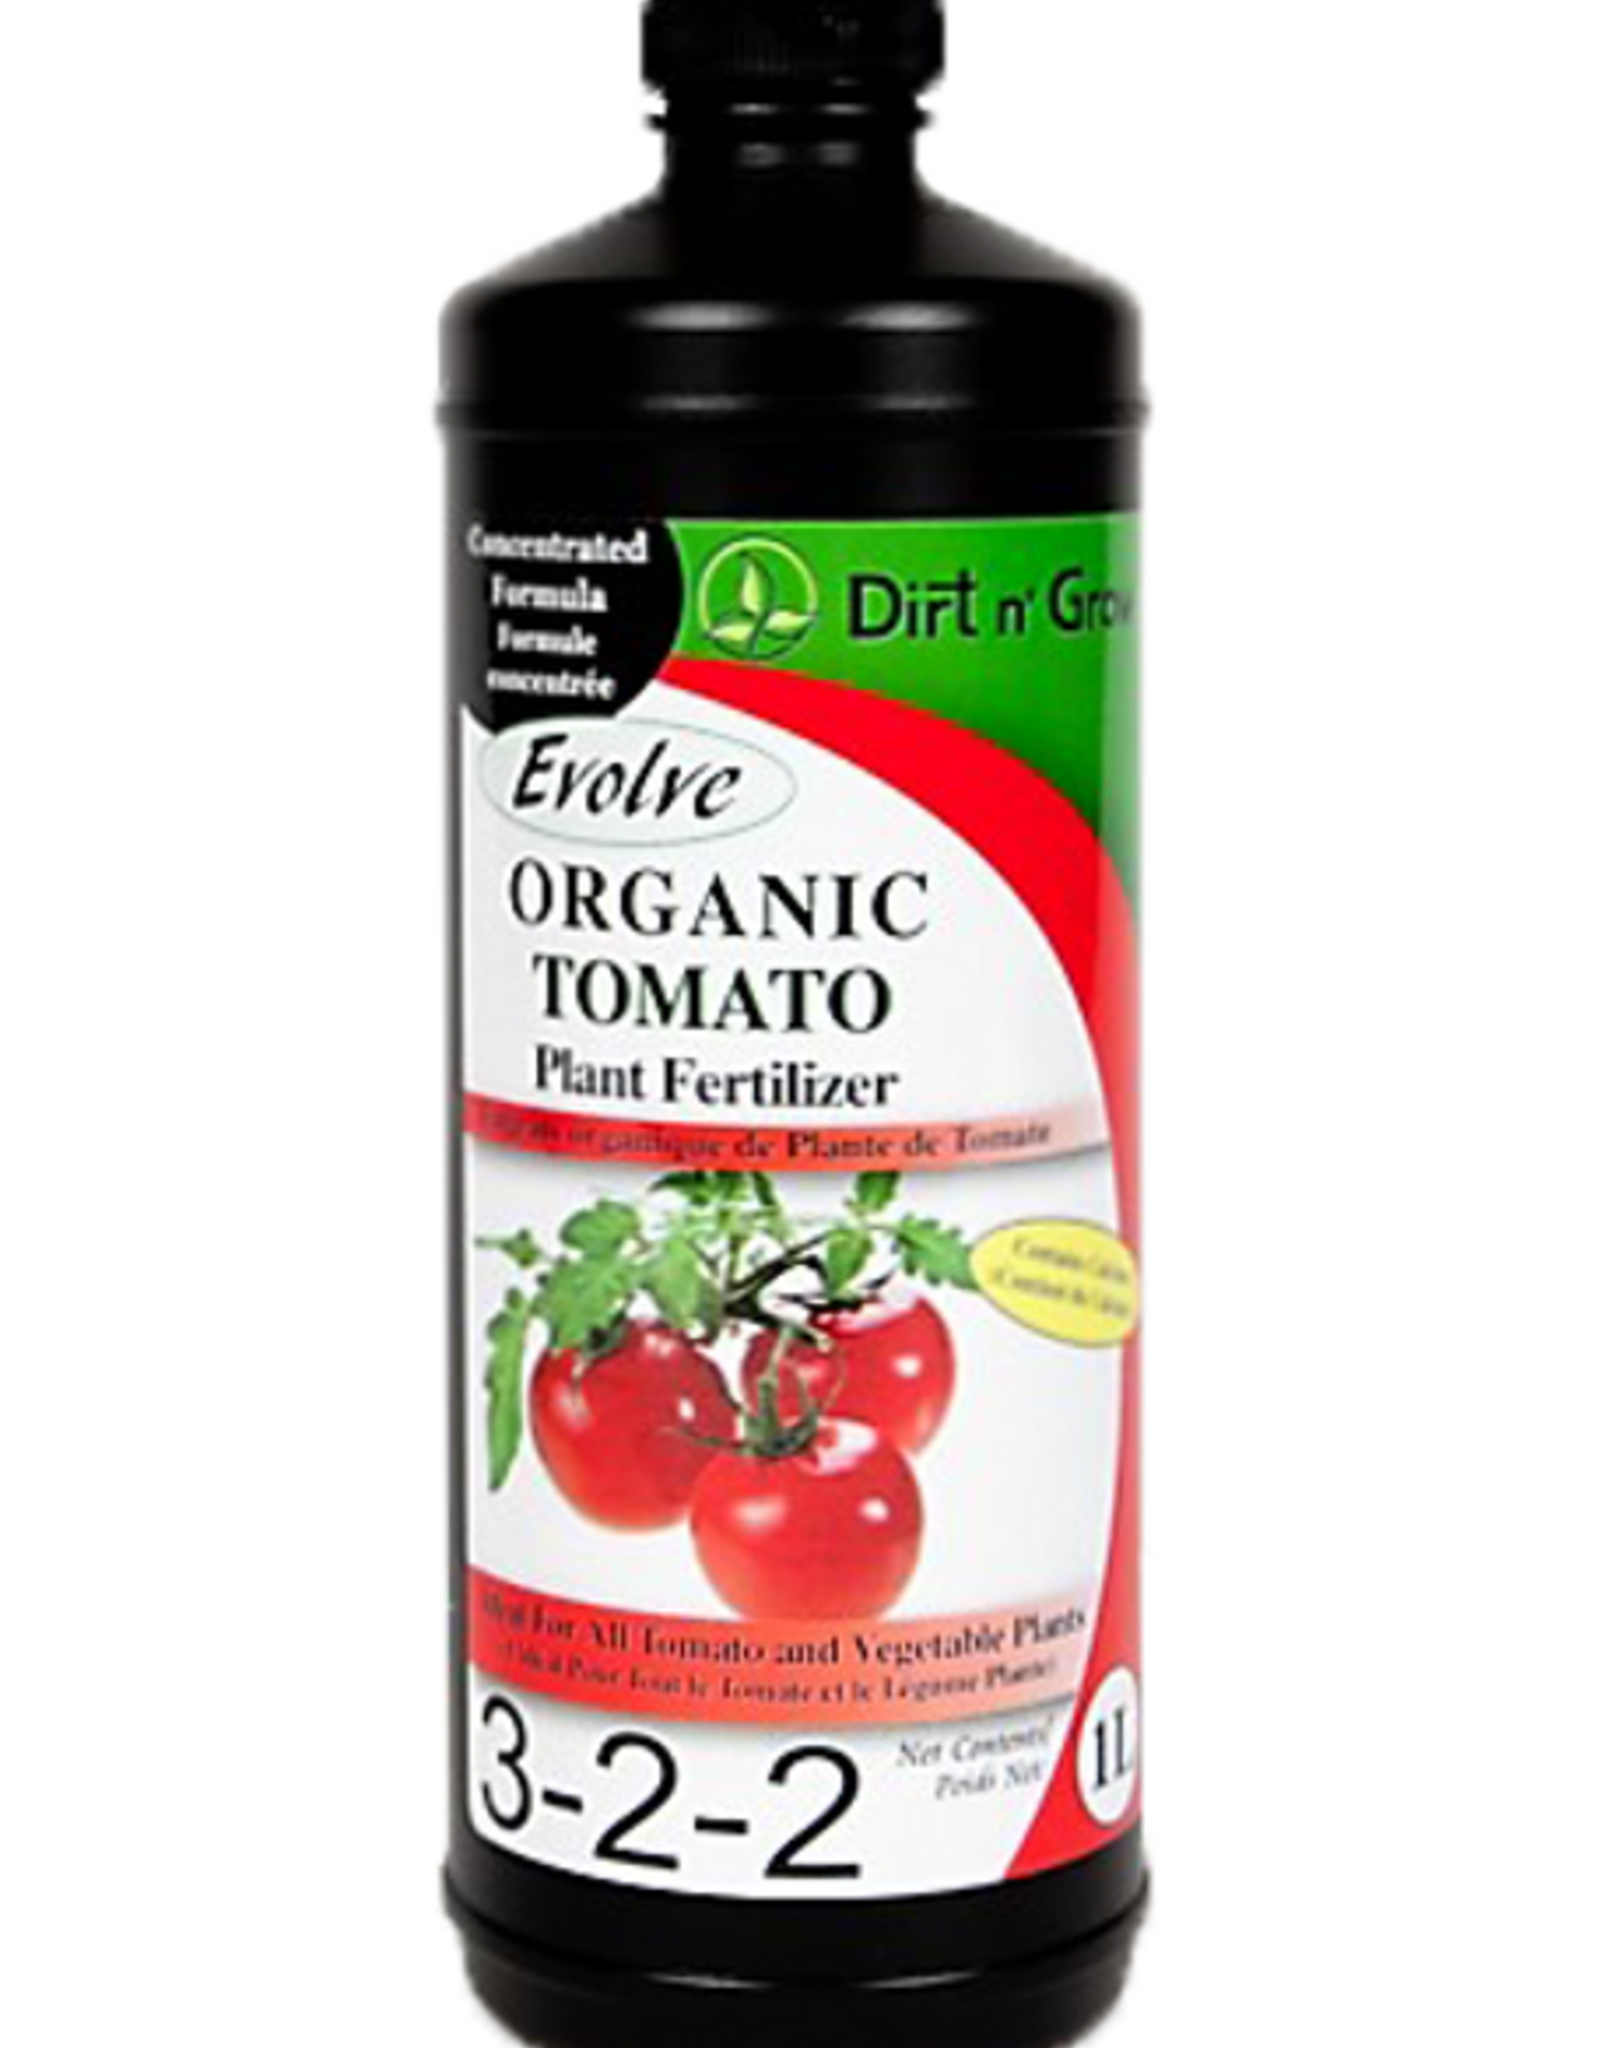 Evolve Tomato 3-2-2 1 L